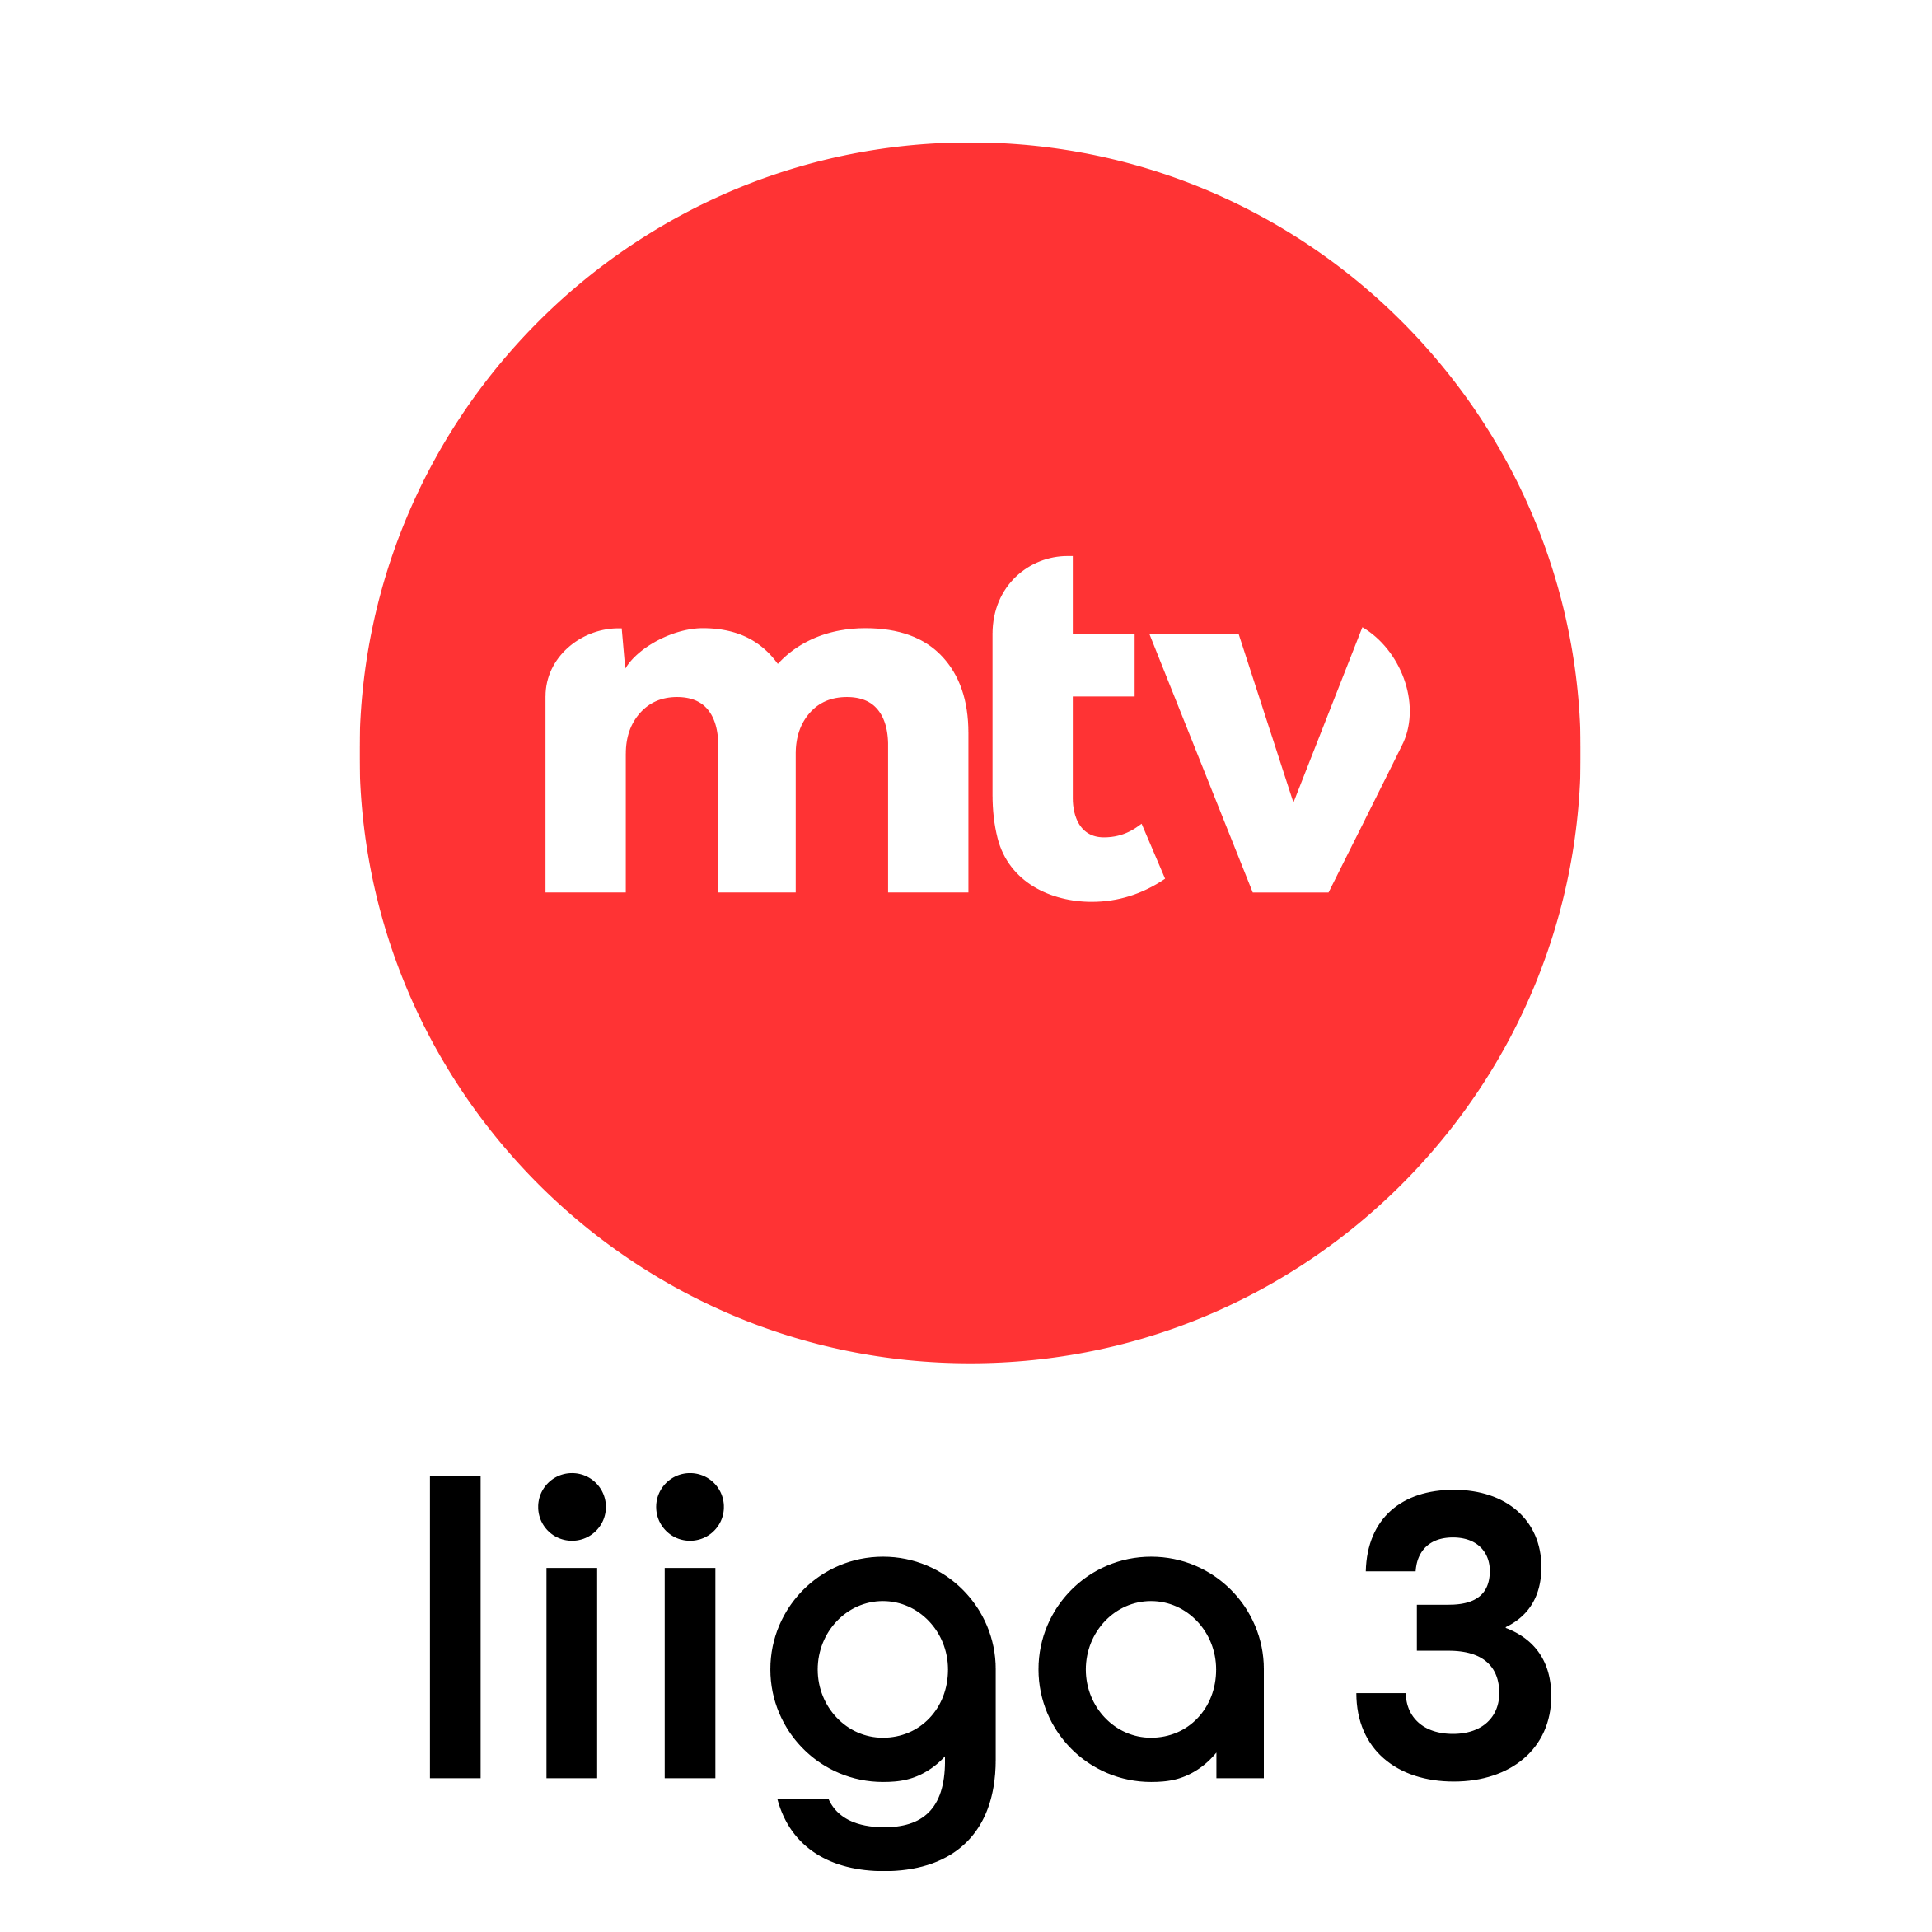 MTV Liiga 3